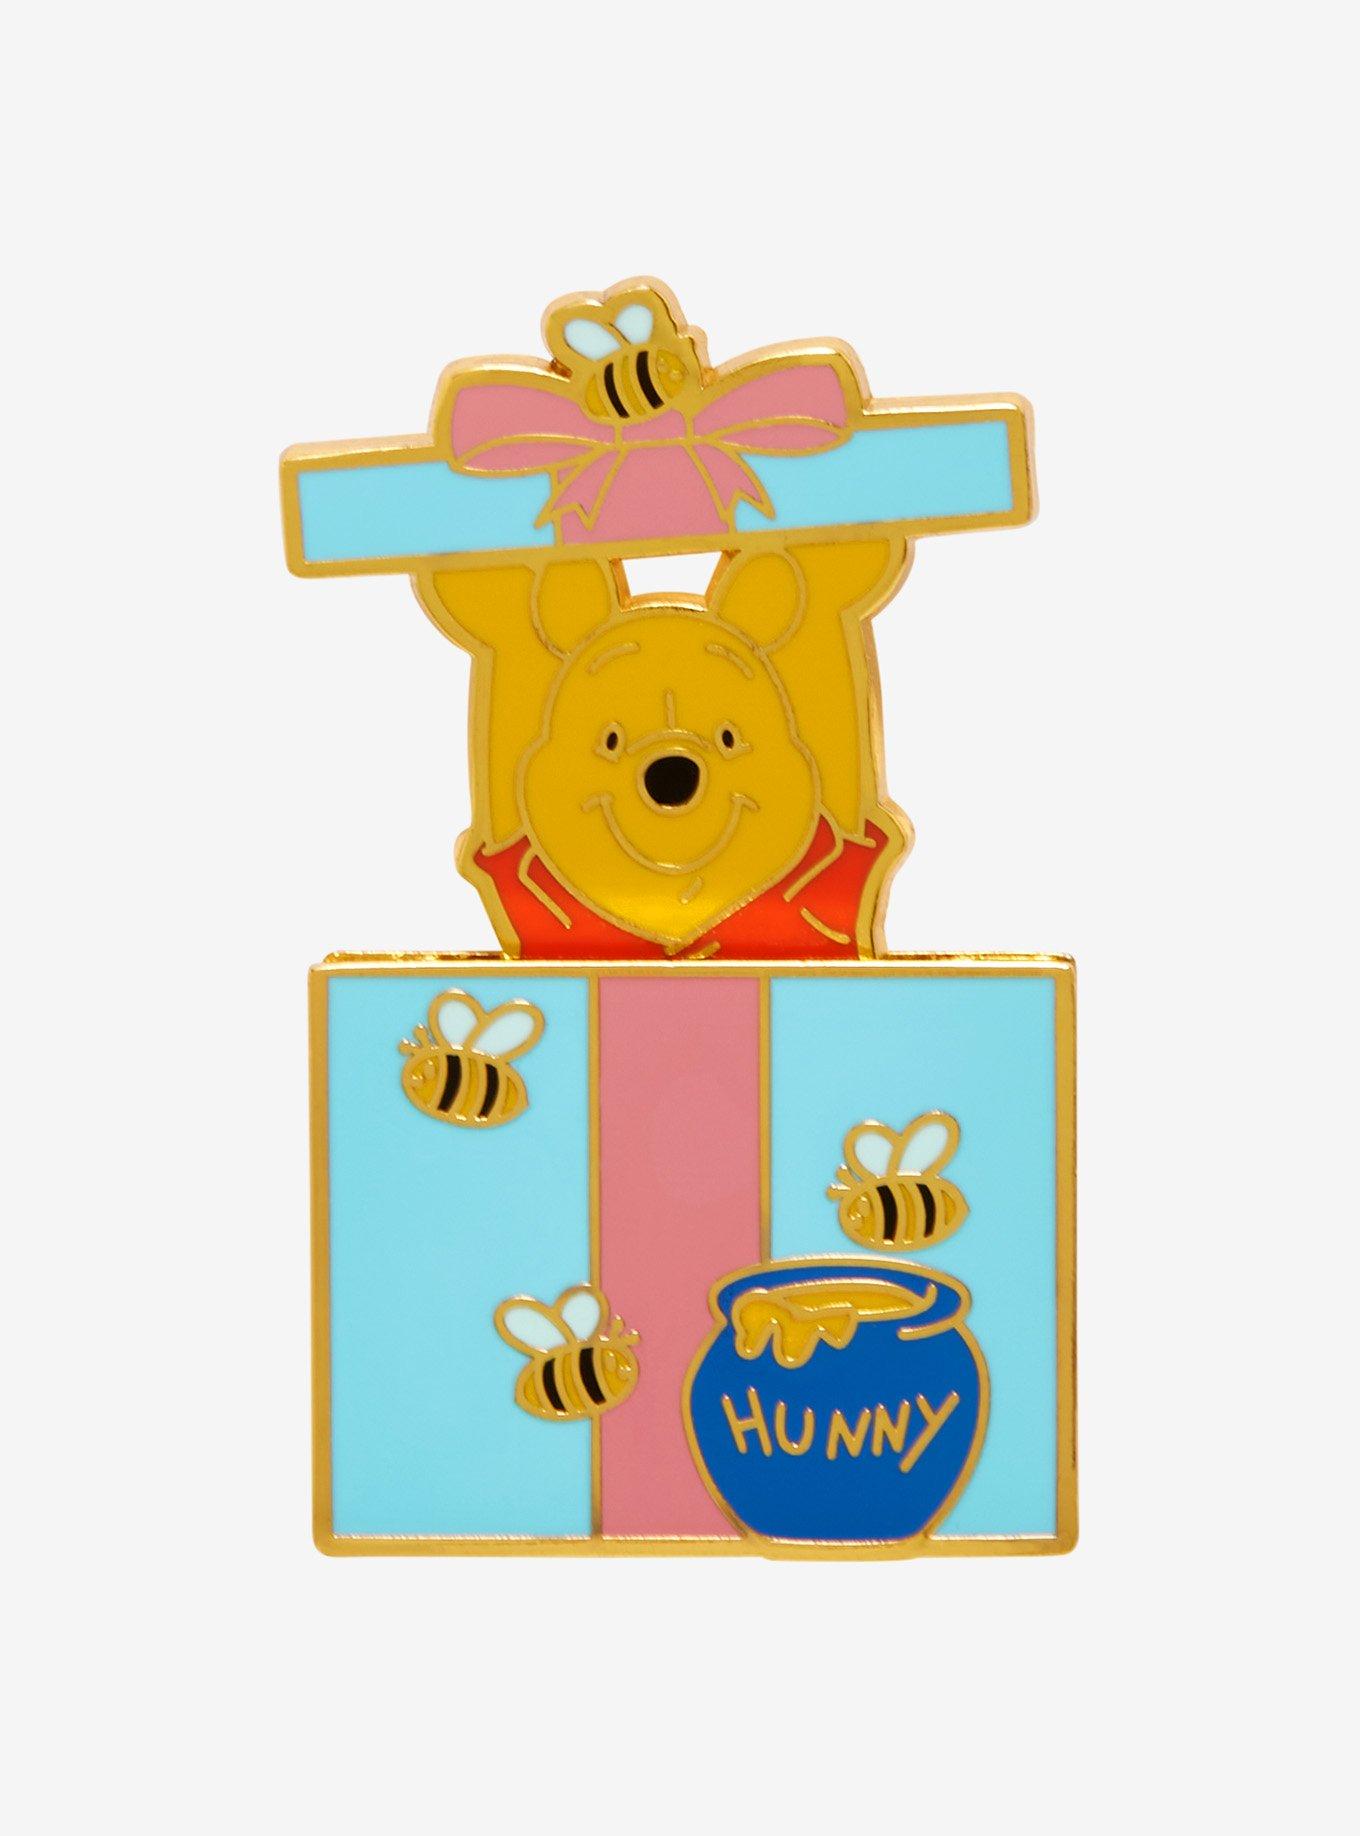 Loungefly Disney Winnie the Pooh Hunny Pot Enamel Keychain